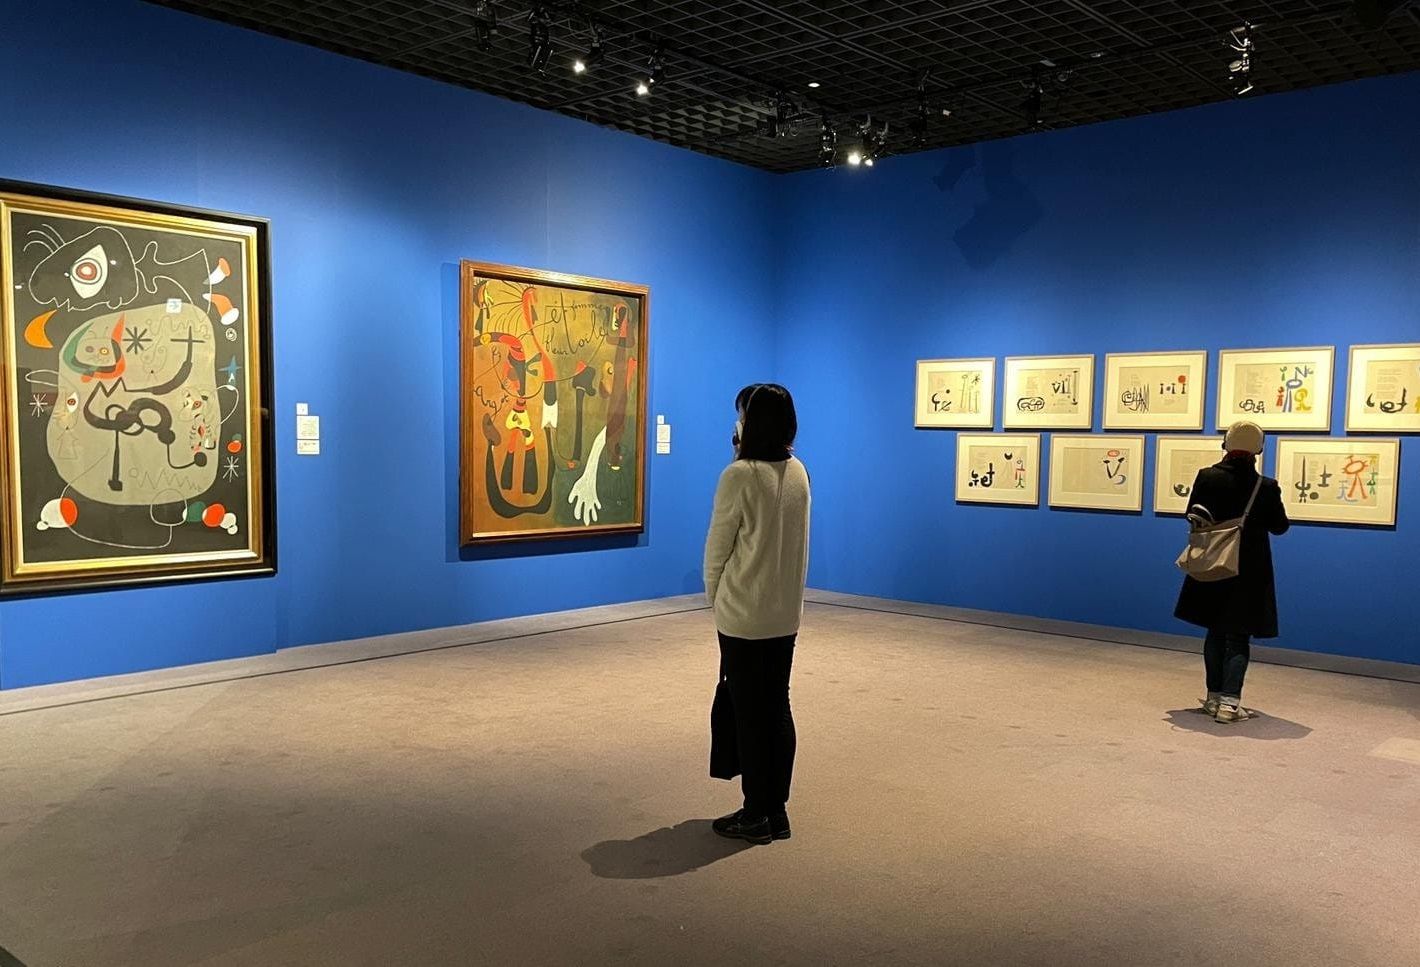 Una de las salas de la exposición 'Miró y Japón', en el Museo de Arte Bunkamura de Shinjuku, Tokio. KENJI MATSUDA